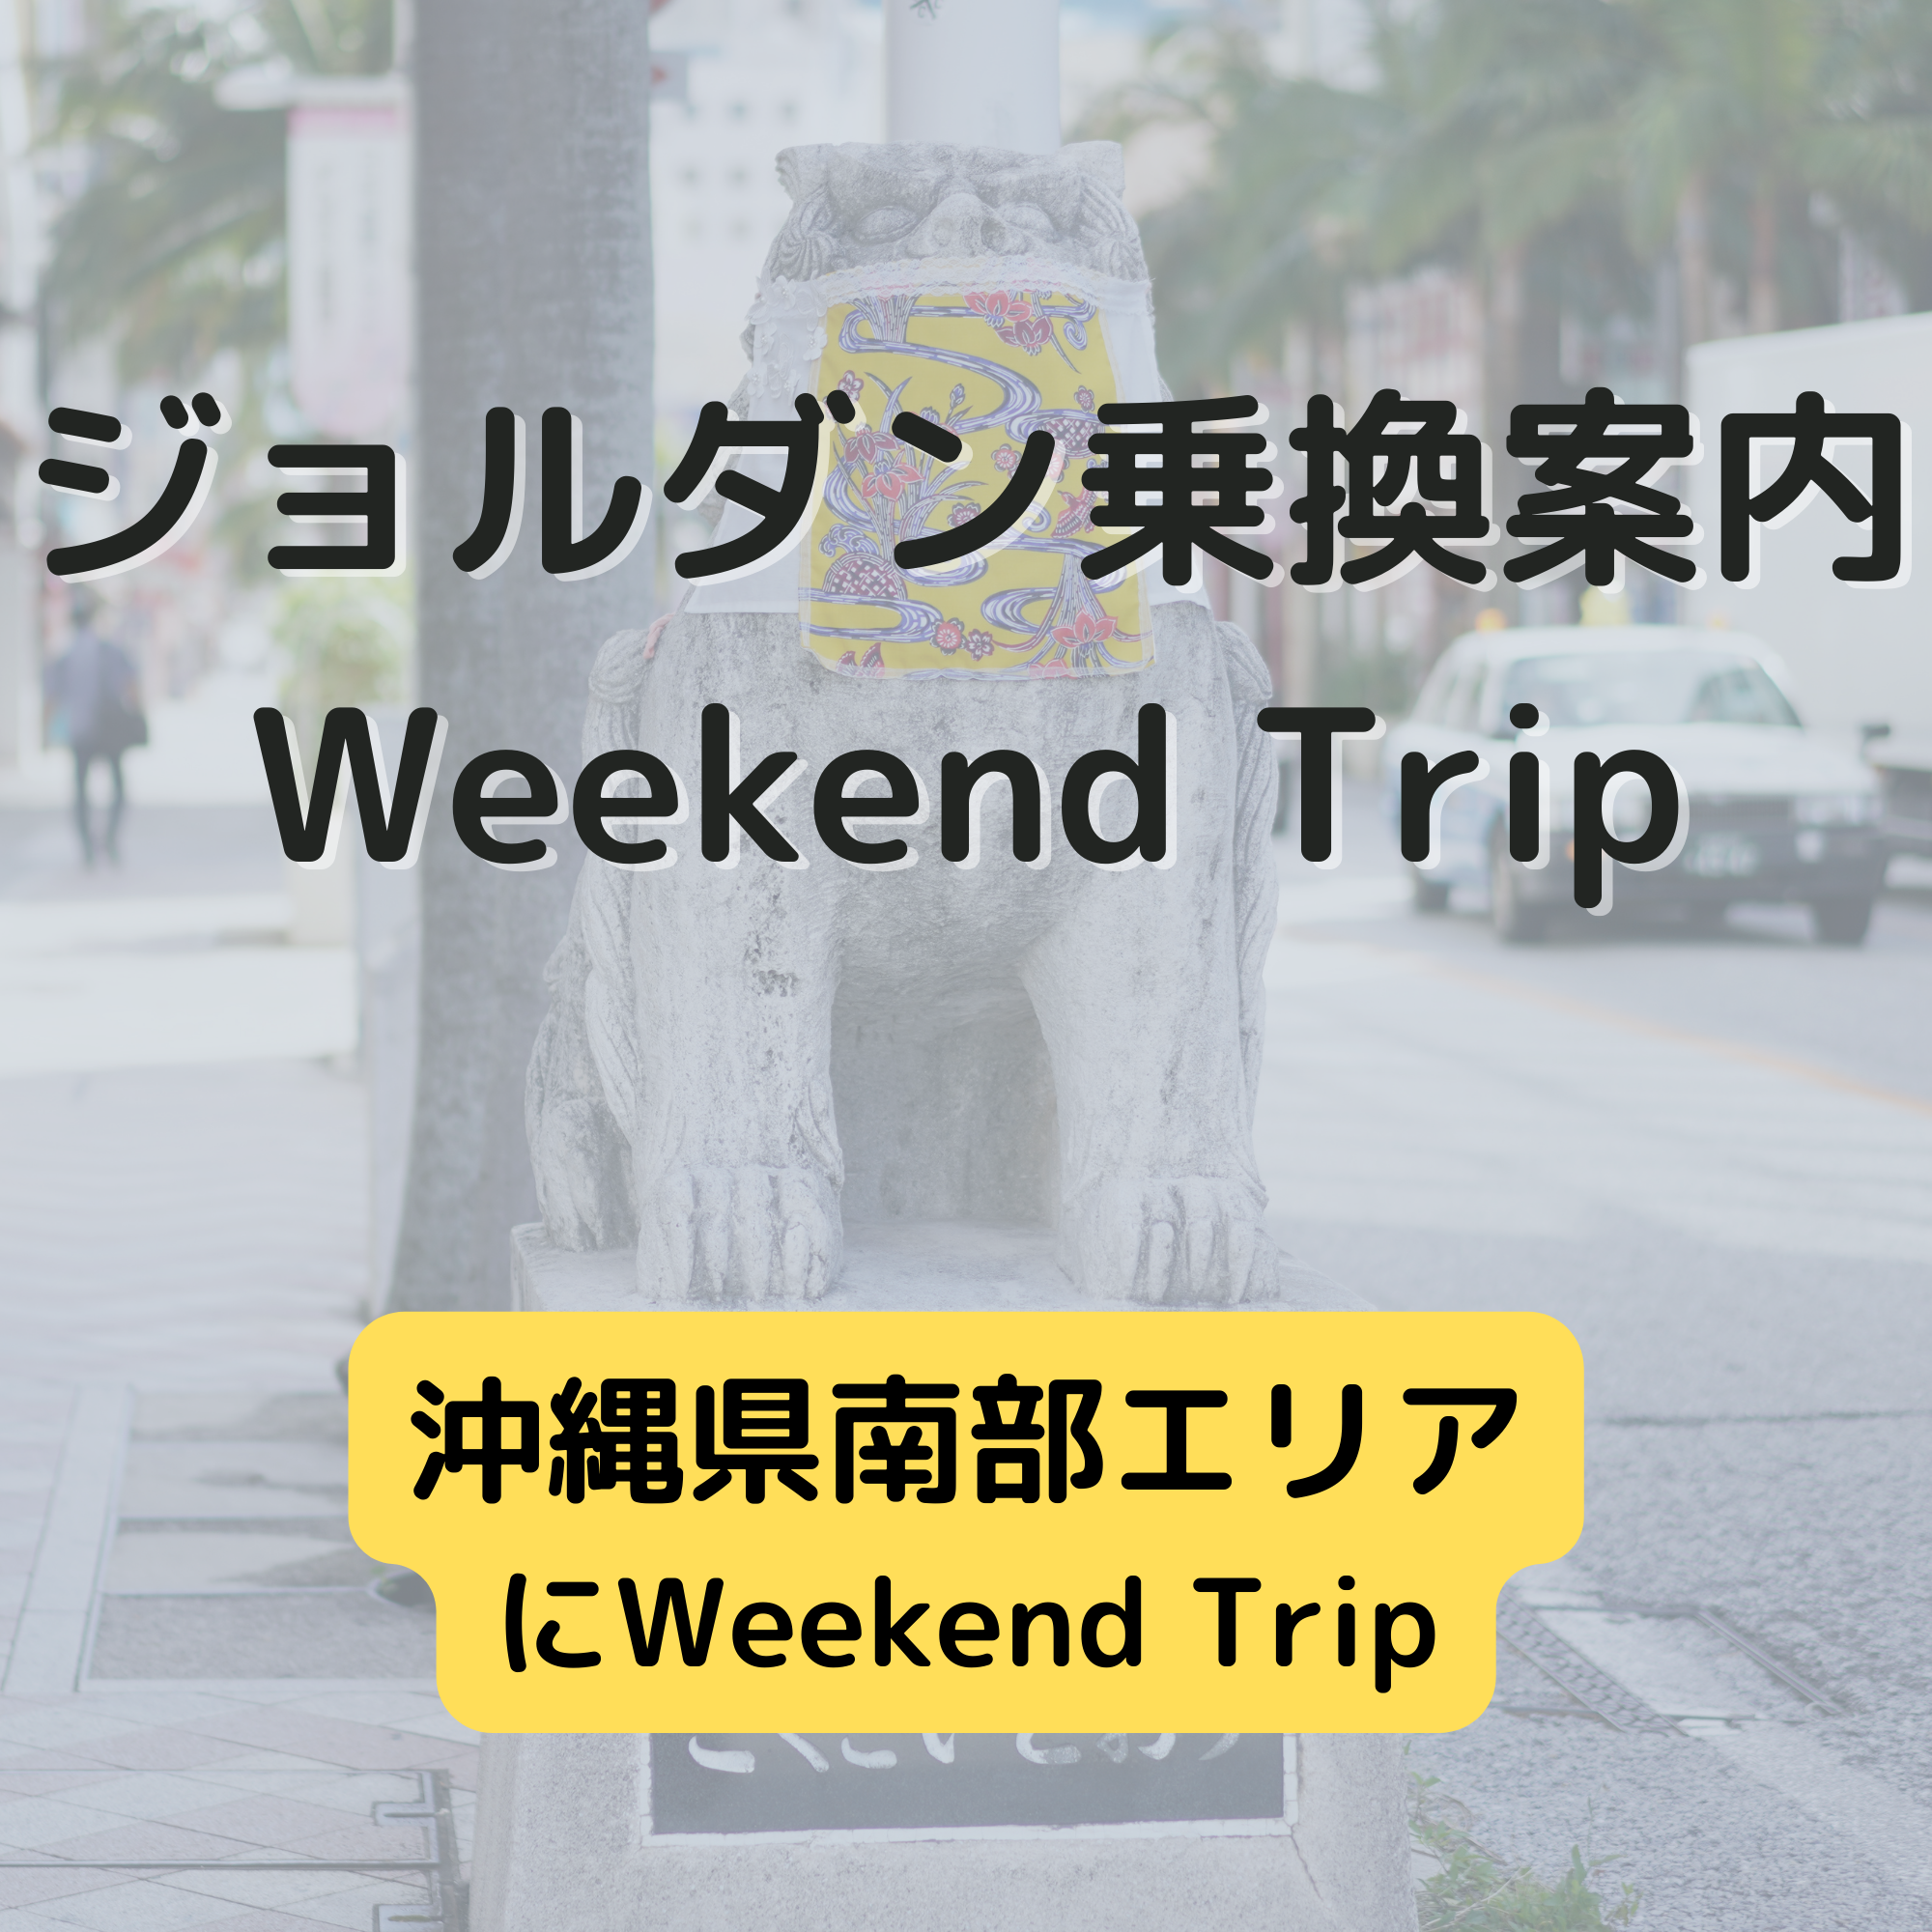 ジョルダン乗換案内　Weekend Trip-沖縄県南部エリア-